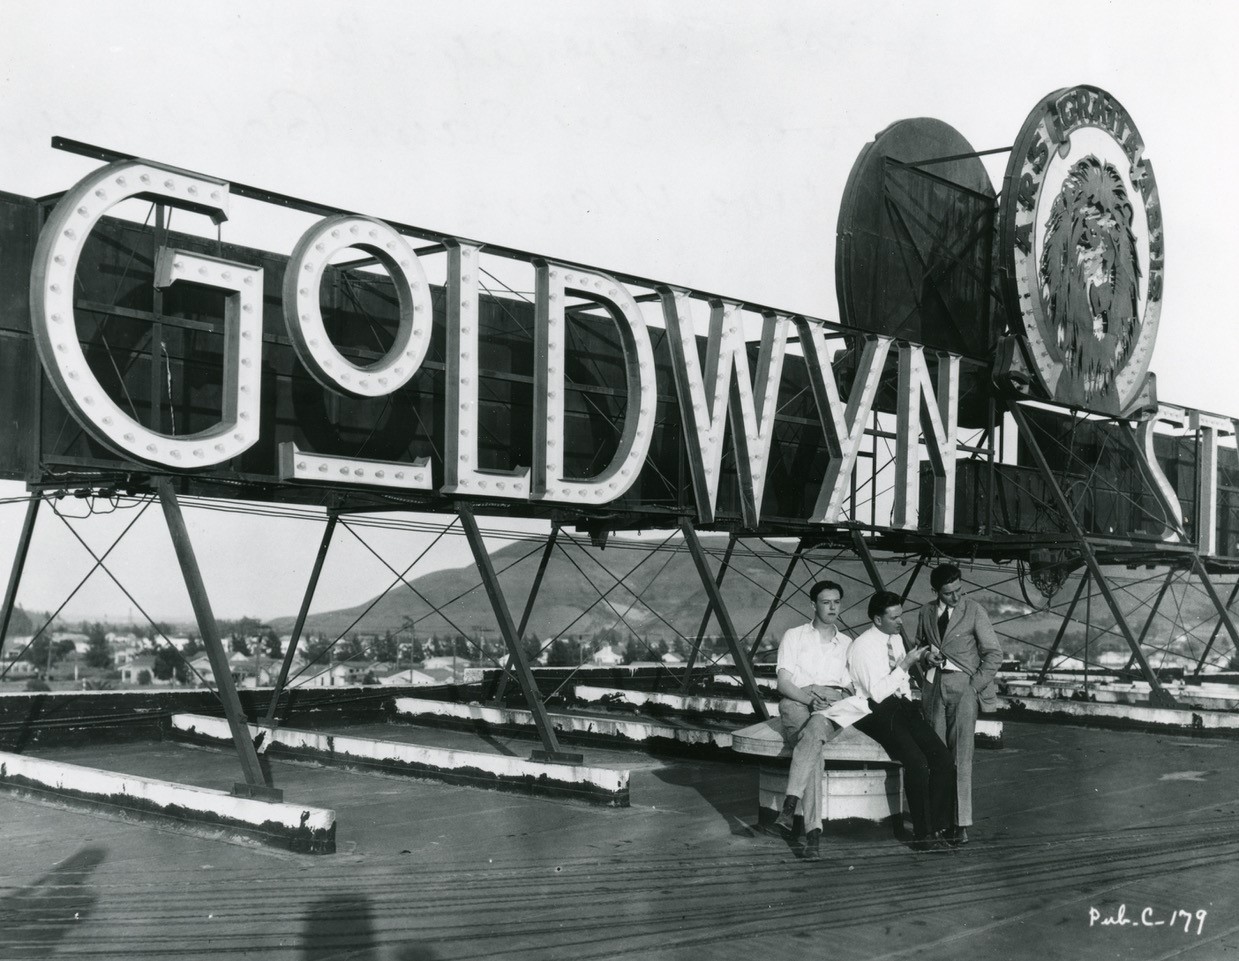 Na obrazie widzimy neon Goldwyn Studios Znak.